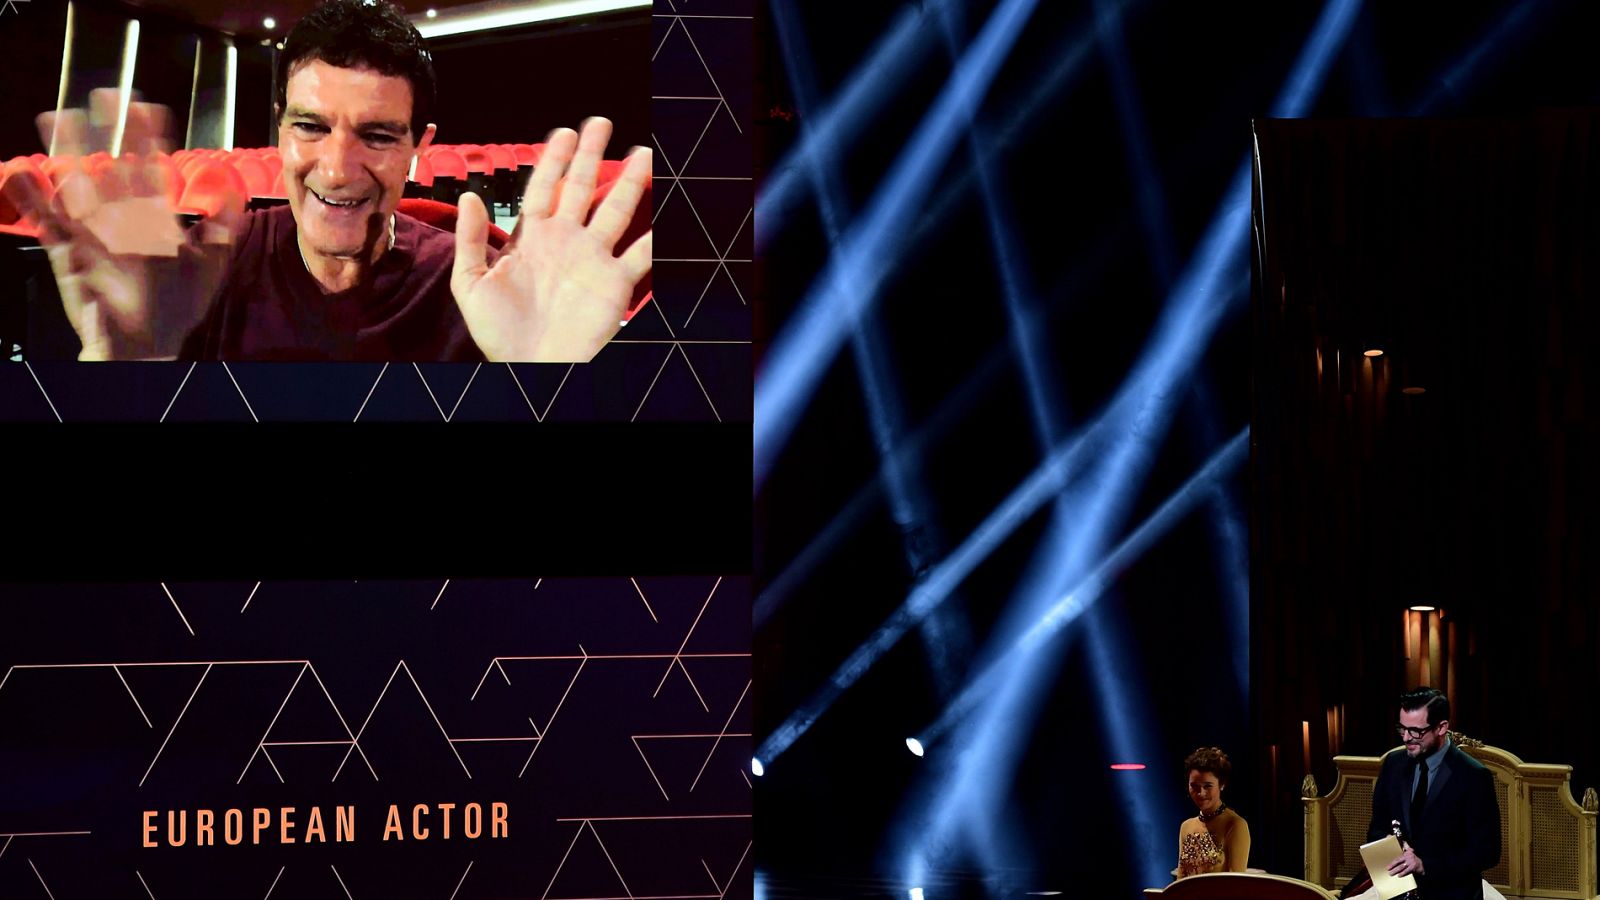 Telediario - 07/12/19 - La Academia del Cine Europeo premia a Antonio Banderas por su interpretación en 'Dolor y gloria' - RTVE.es